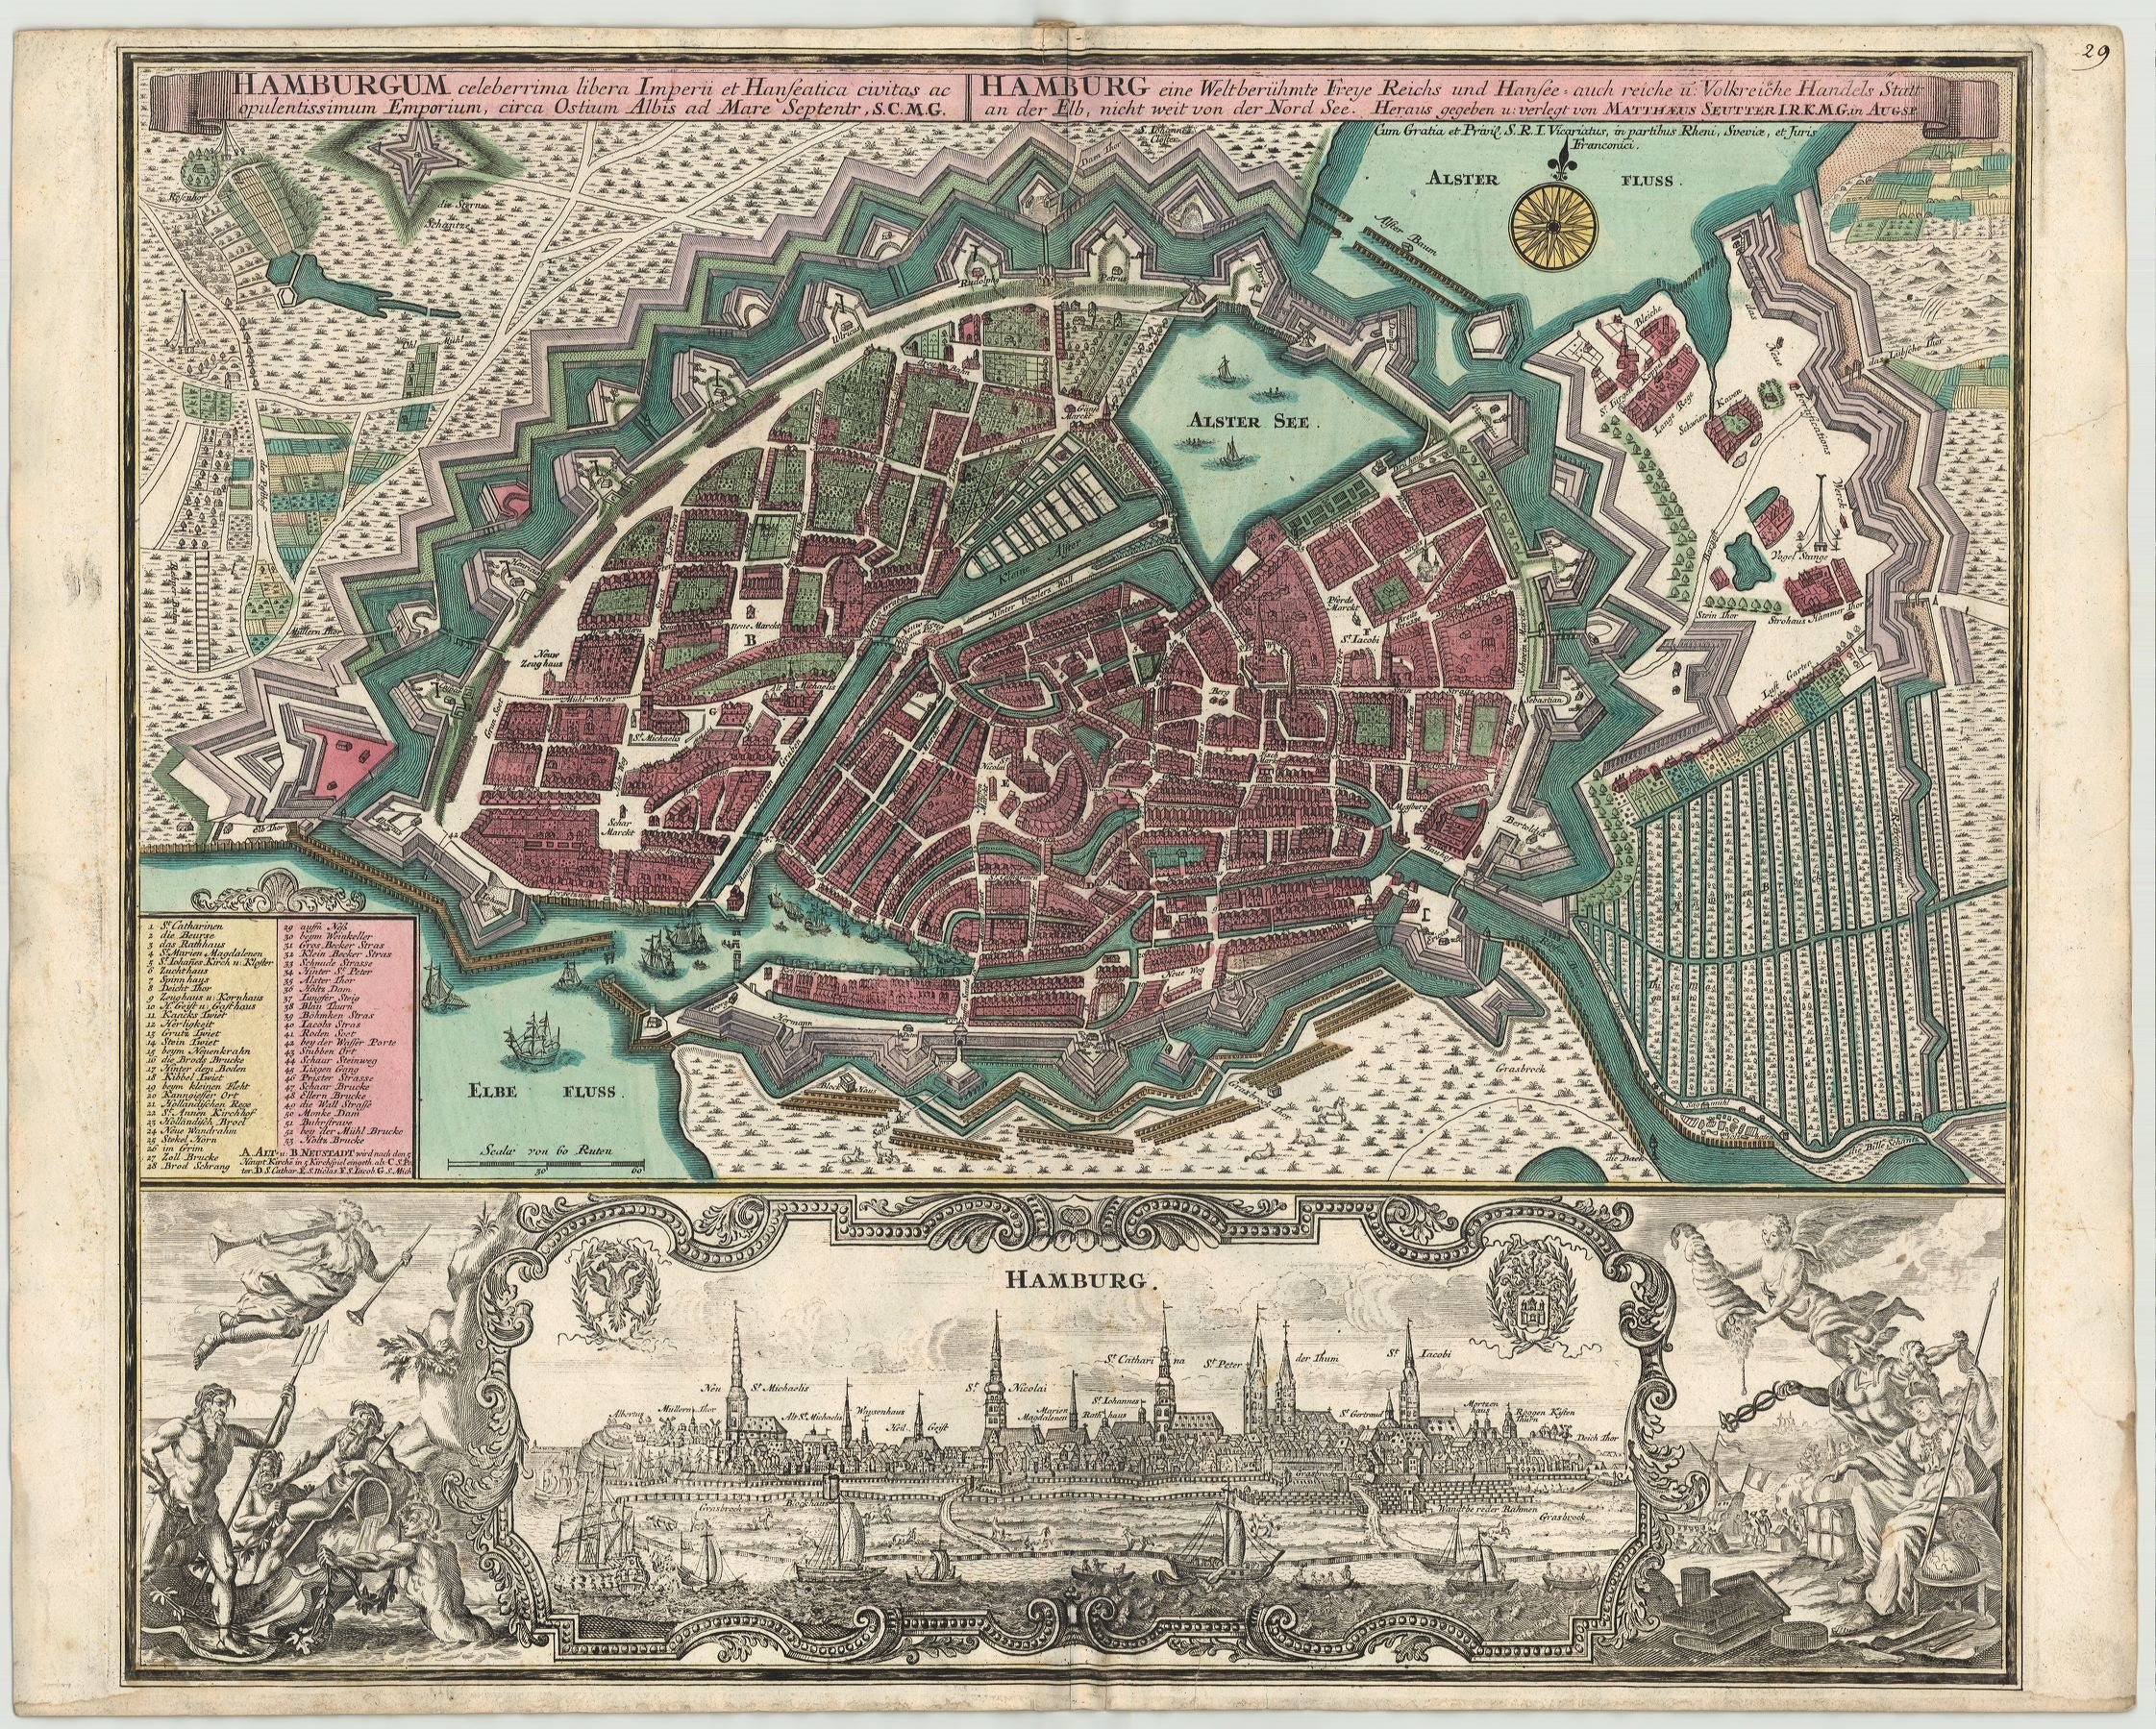 Seutter, Matthias: Hamburg eine Welt berühmte Freye Reichs und Hansee , auch reiche u. Volkreiche Handels--Statt an der Elb, nicht weit von der Nord See. 1740